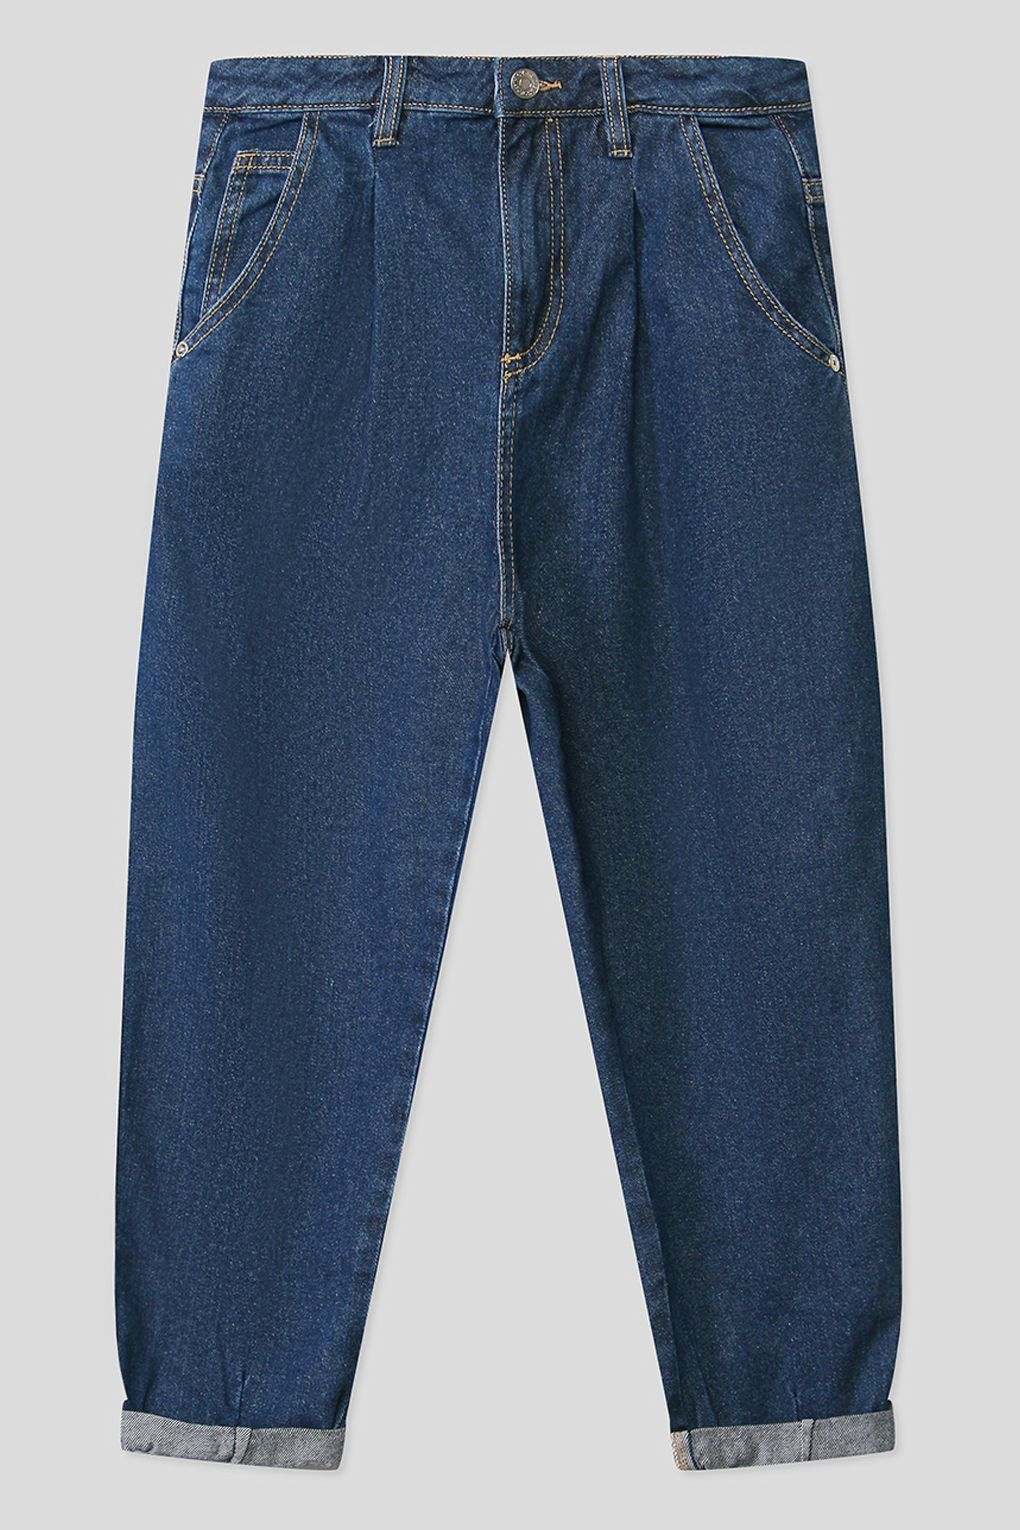 джинсы OVS 1436595 для девочек, цвет Синий р.170